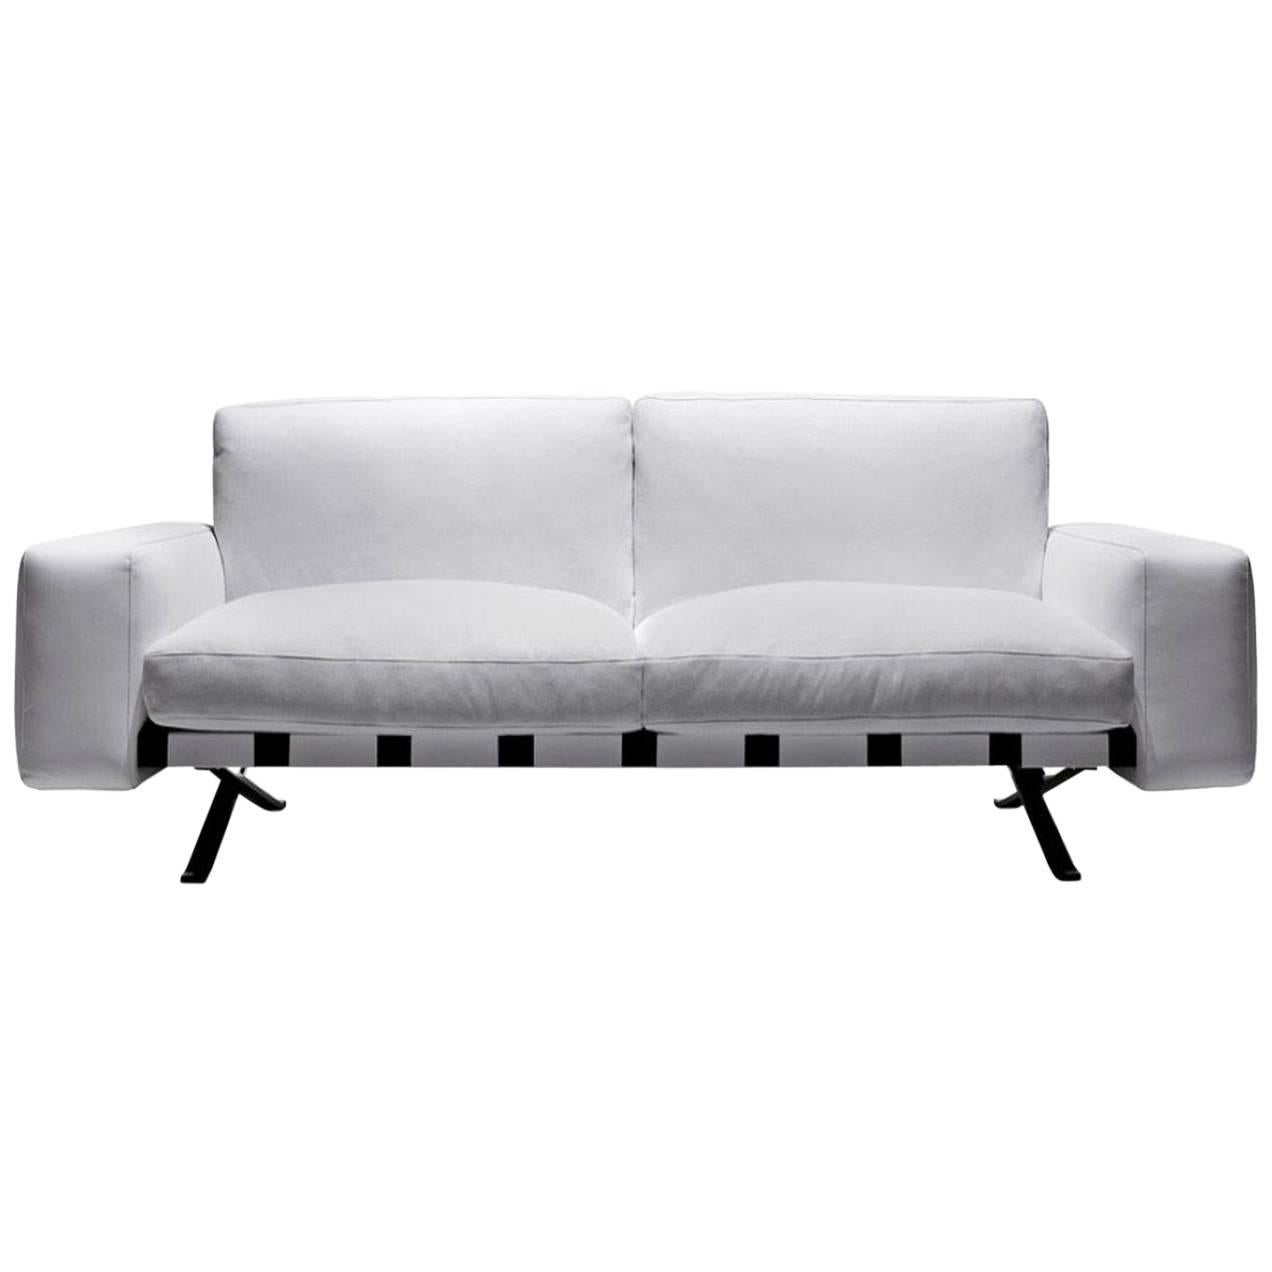 Zweisitziges Sofa „Fenix“ entworfen von Ludovica und Roberto Palomba für Driade